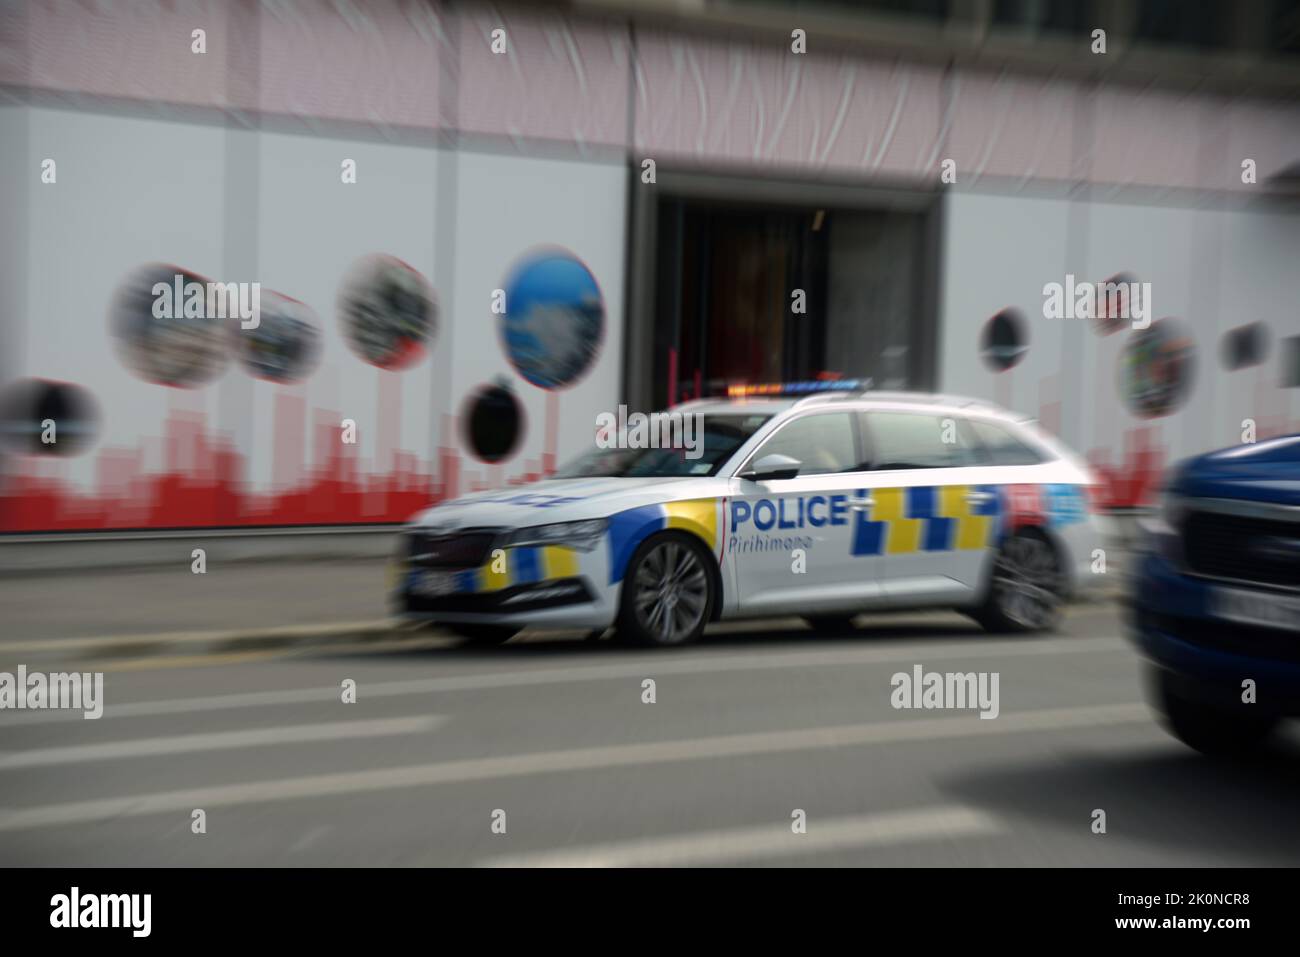 Una macchina di polizia con luci lampeggianti e sirena piangendo teste di un'emergenza a Christchurch, la città di Quake della Nuova Zelanda. Immagine distorta con radiale Foto Stock